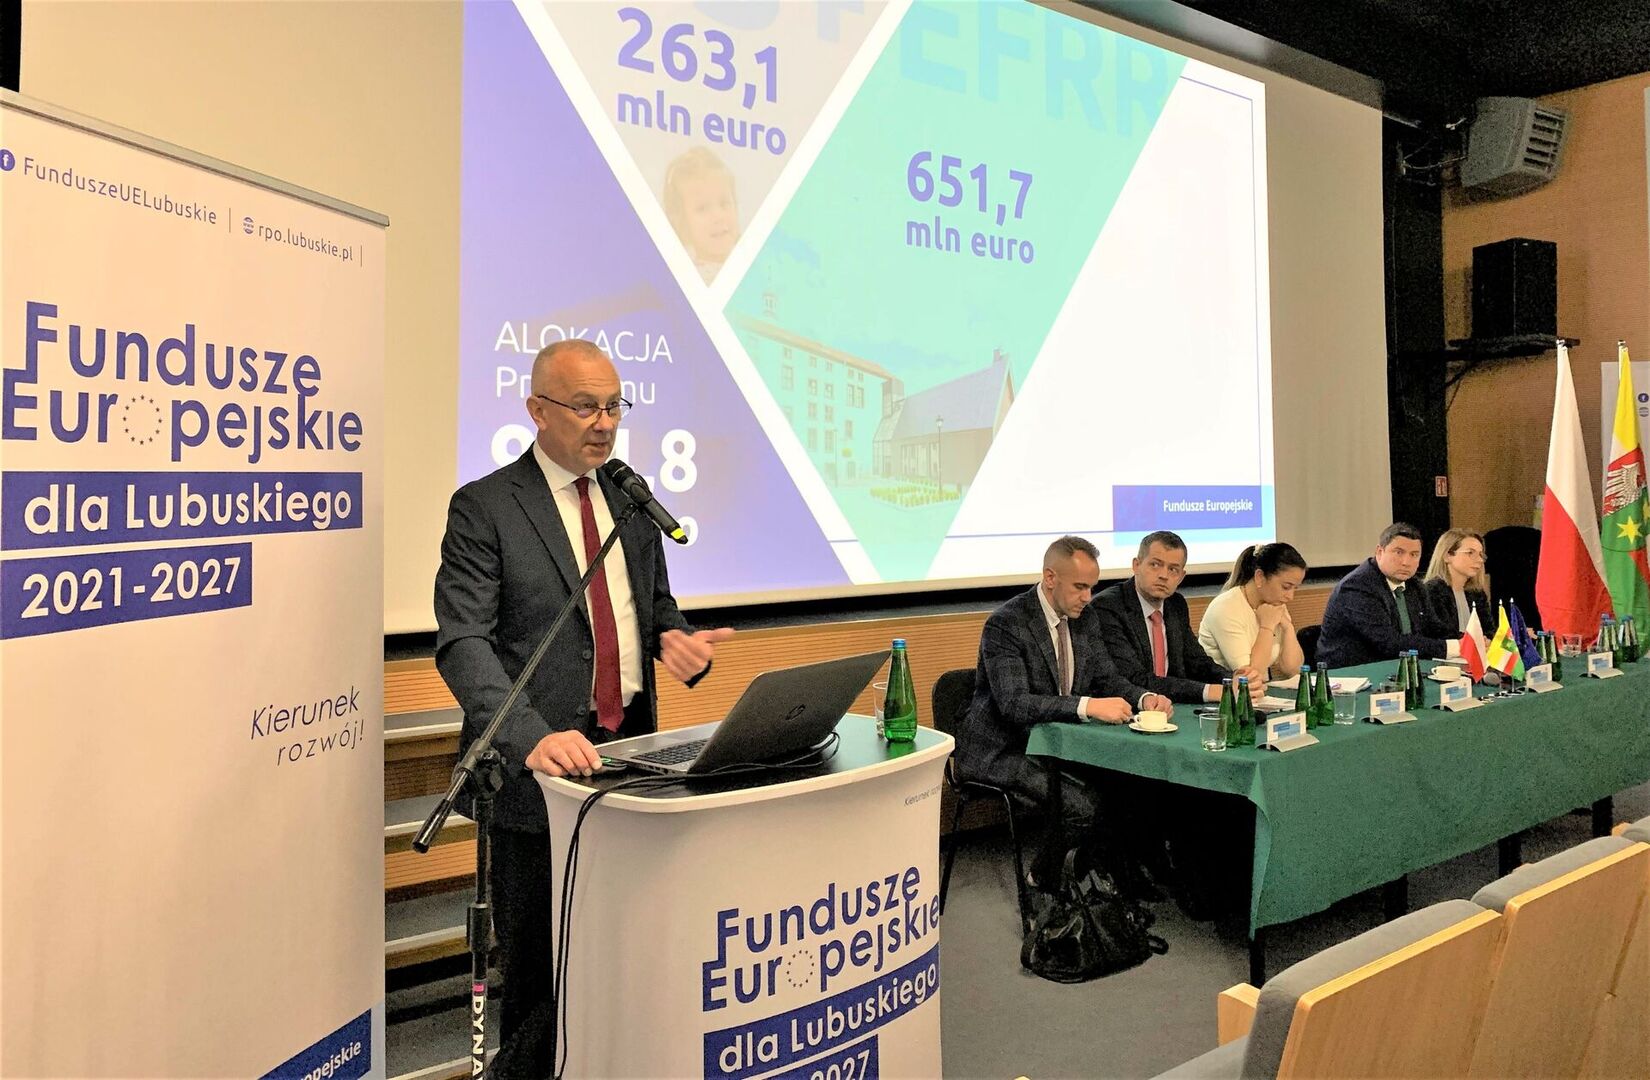 Spotkanie informacyjne nt. Funduszy Europejskich dla Lubuskiego 2021-2027 we Wschowie